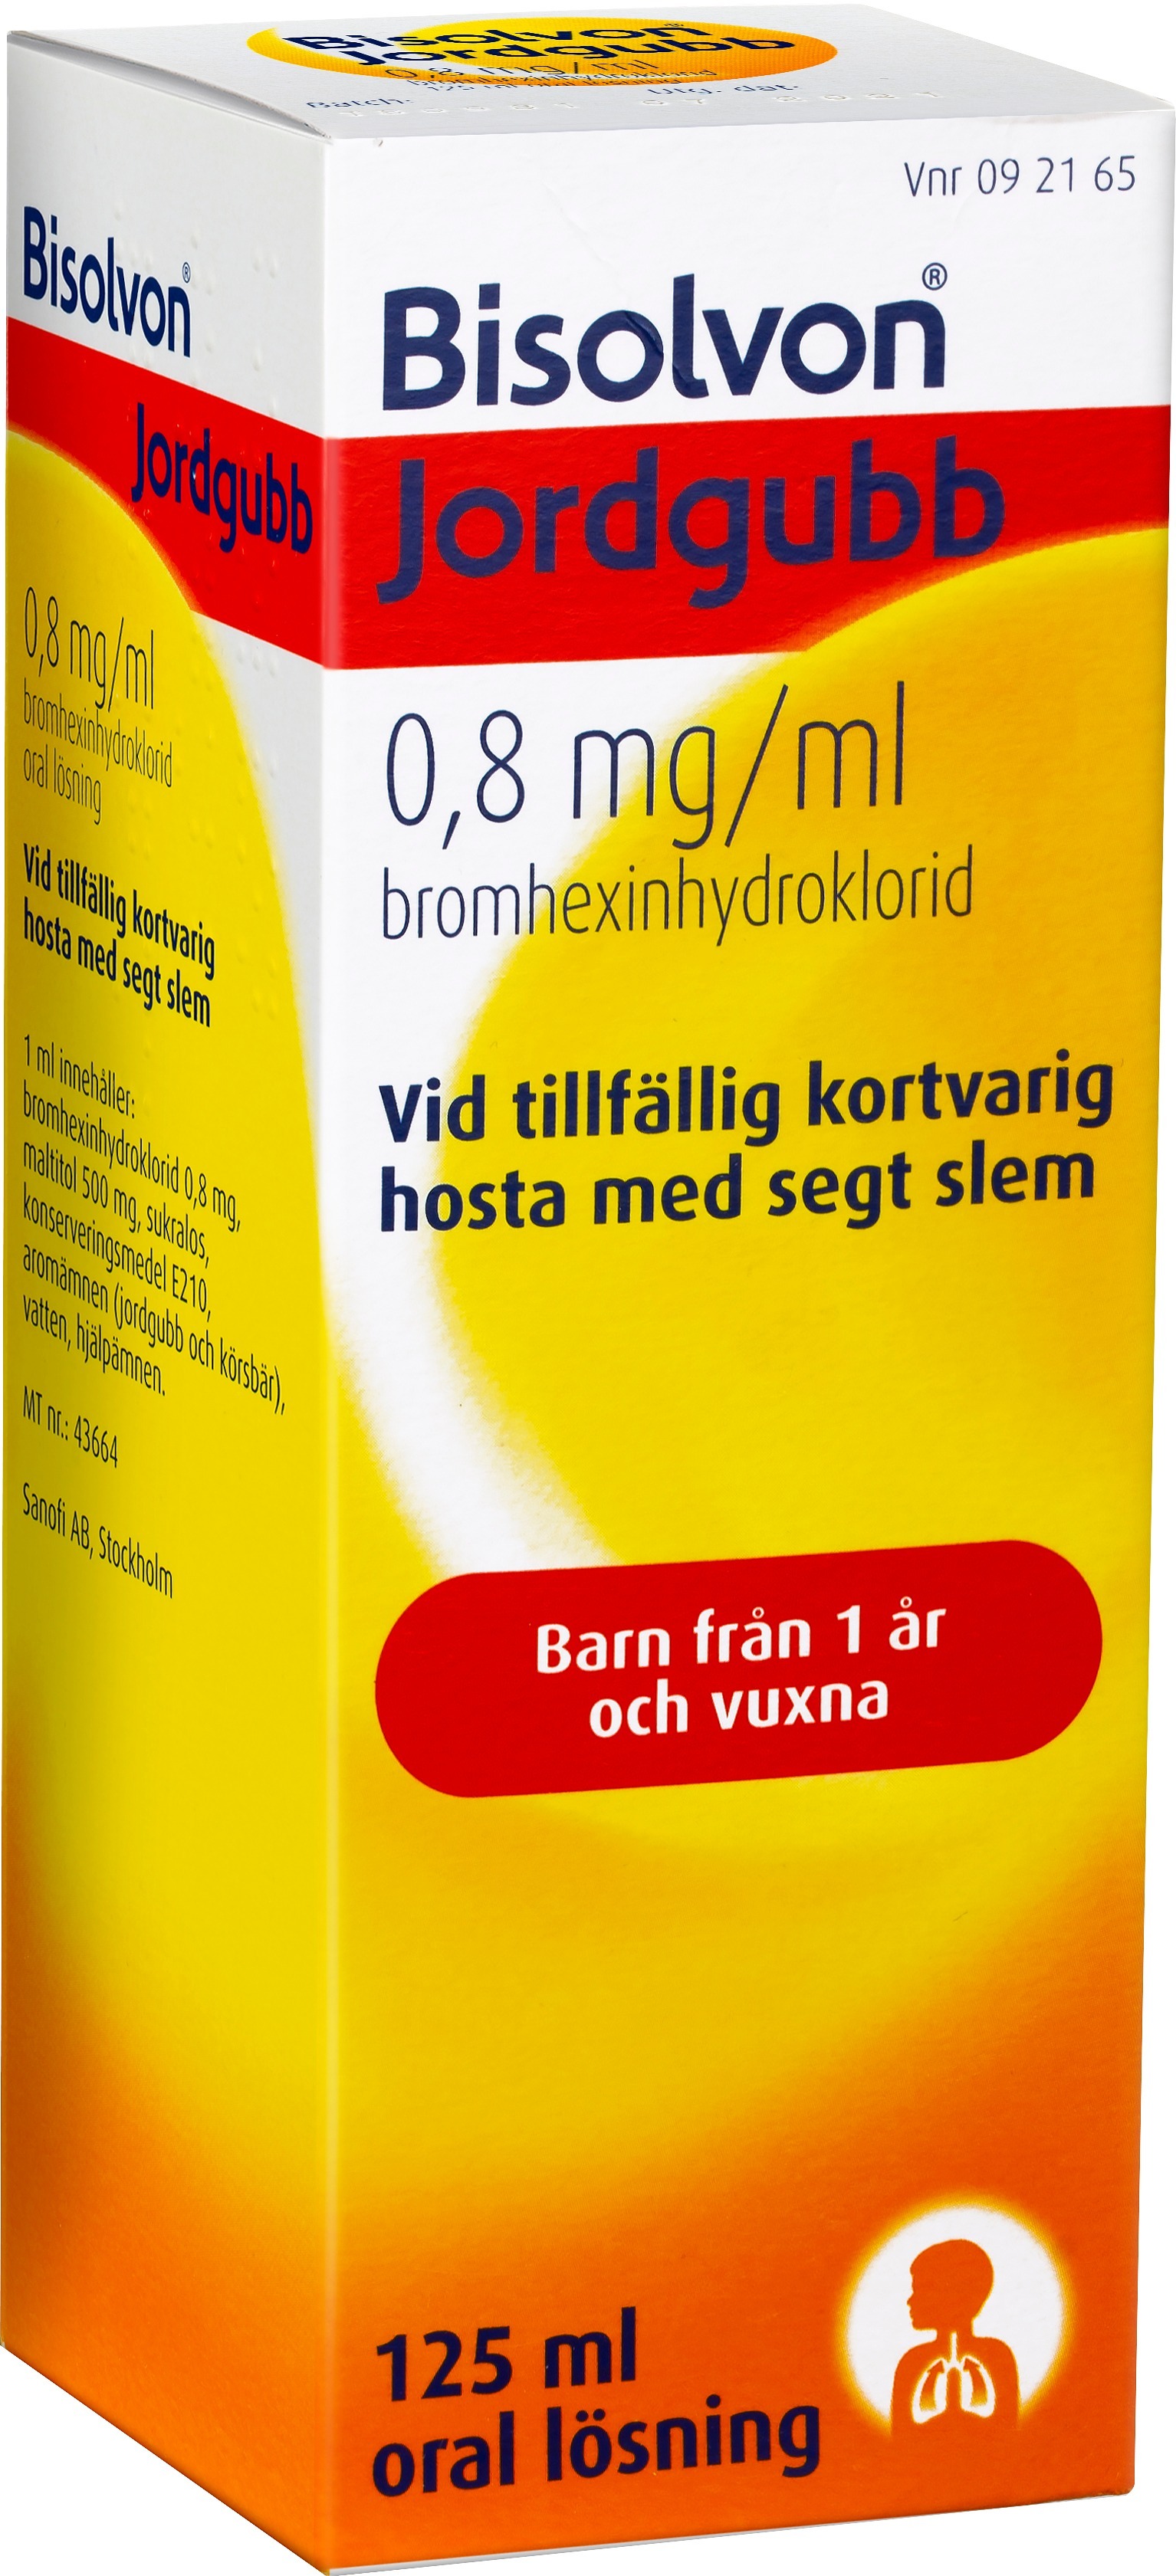 Bisolvon Jordgubb Oral Lösning 0,8mg/ml 125 ml